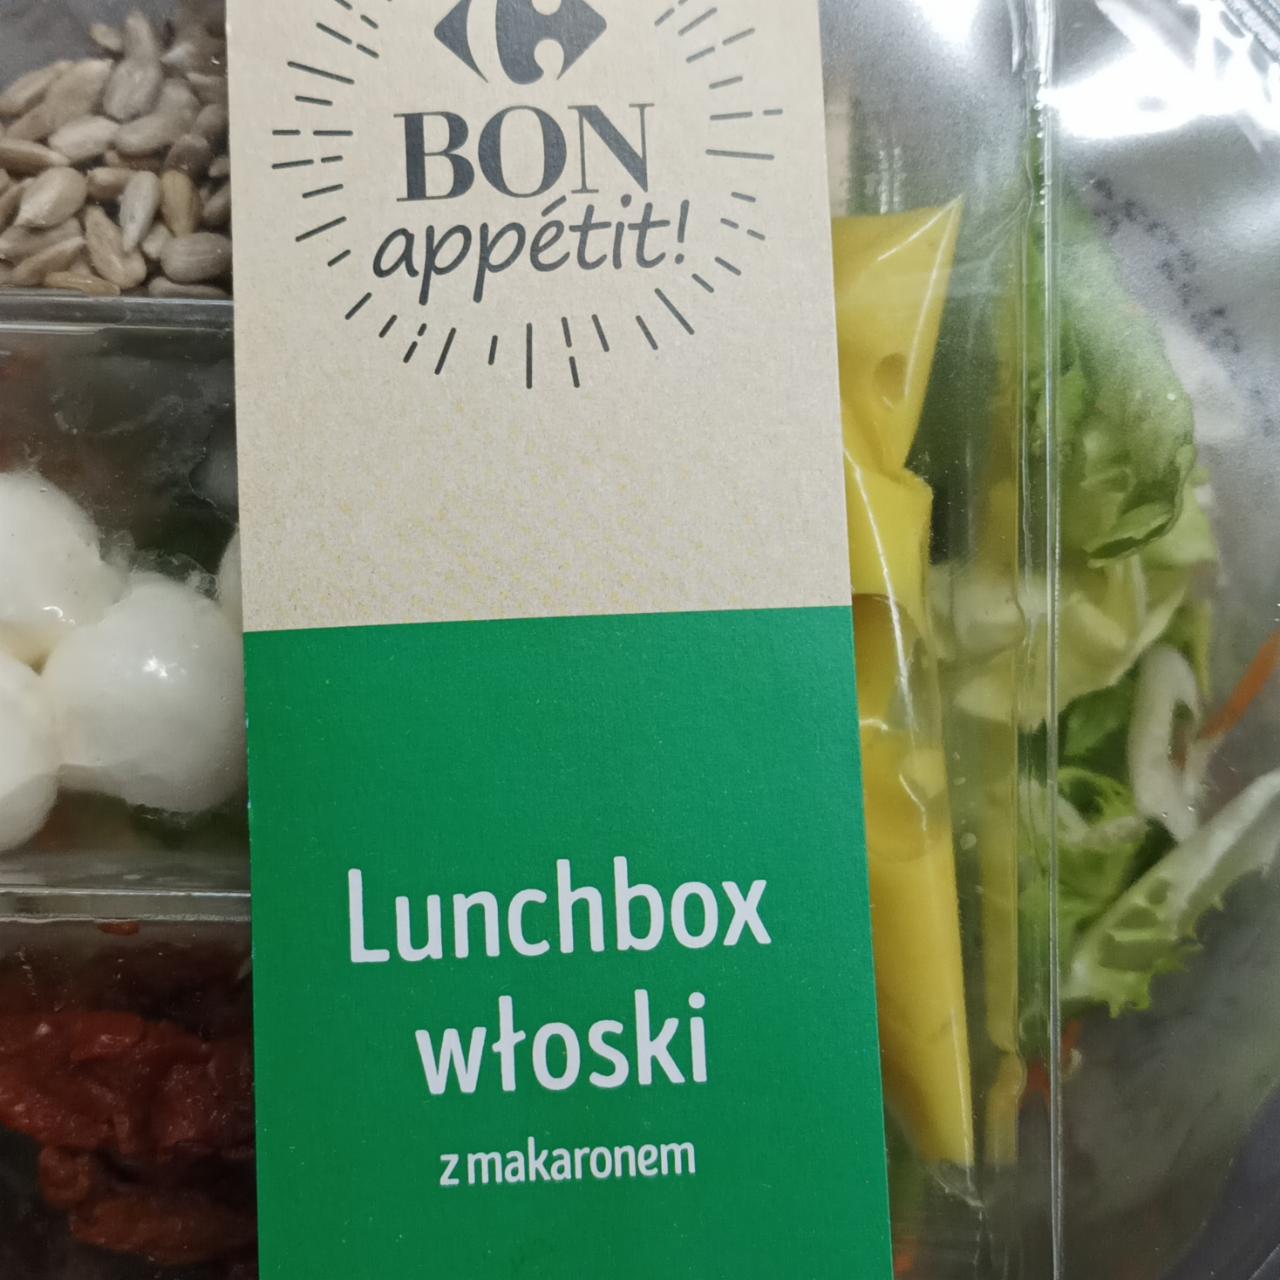 Fotografie - Lunchbox włoski z makaronem Carrefour Bon appétit!